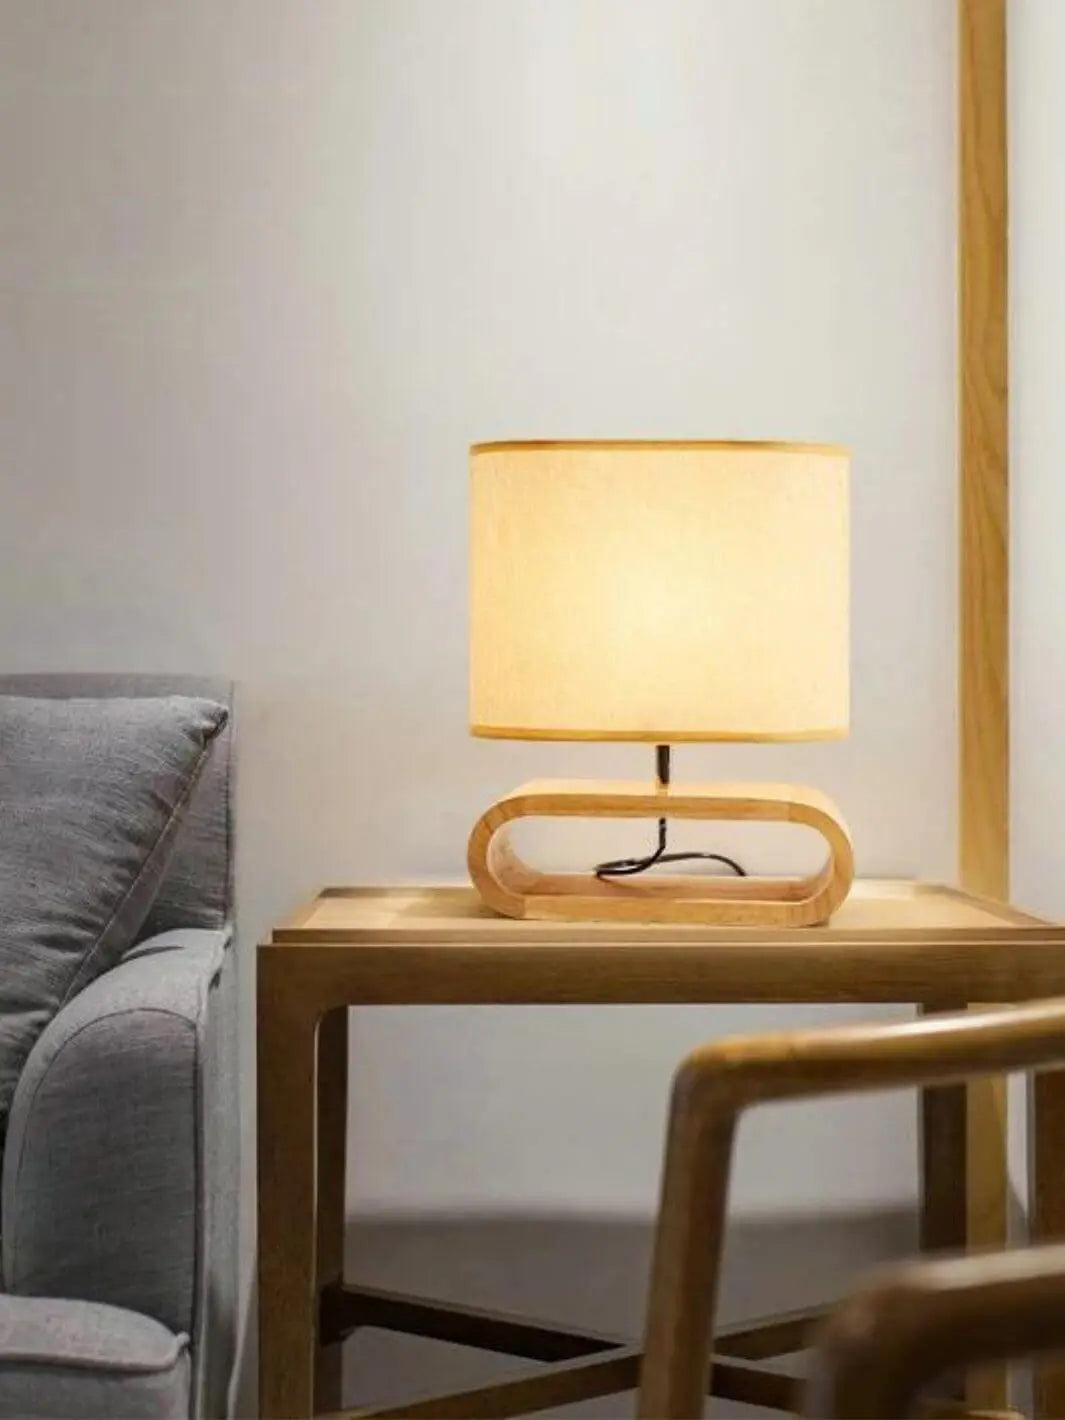 Lampe de chevet Design <br> Scandinave en bois sur table de nuitsolampe.com